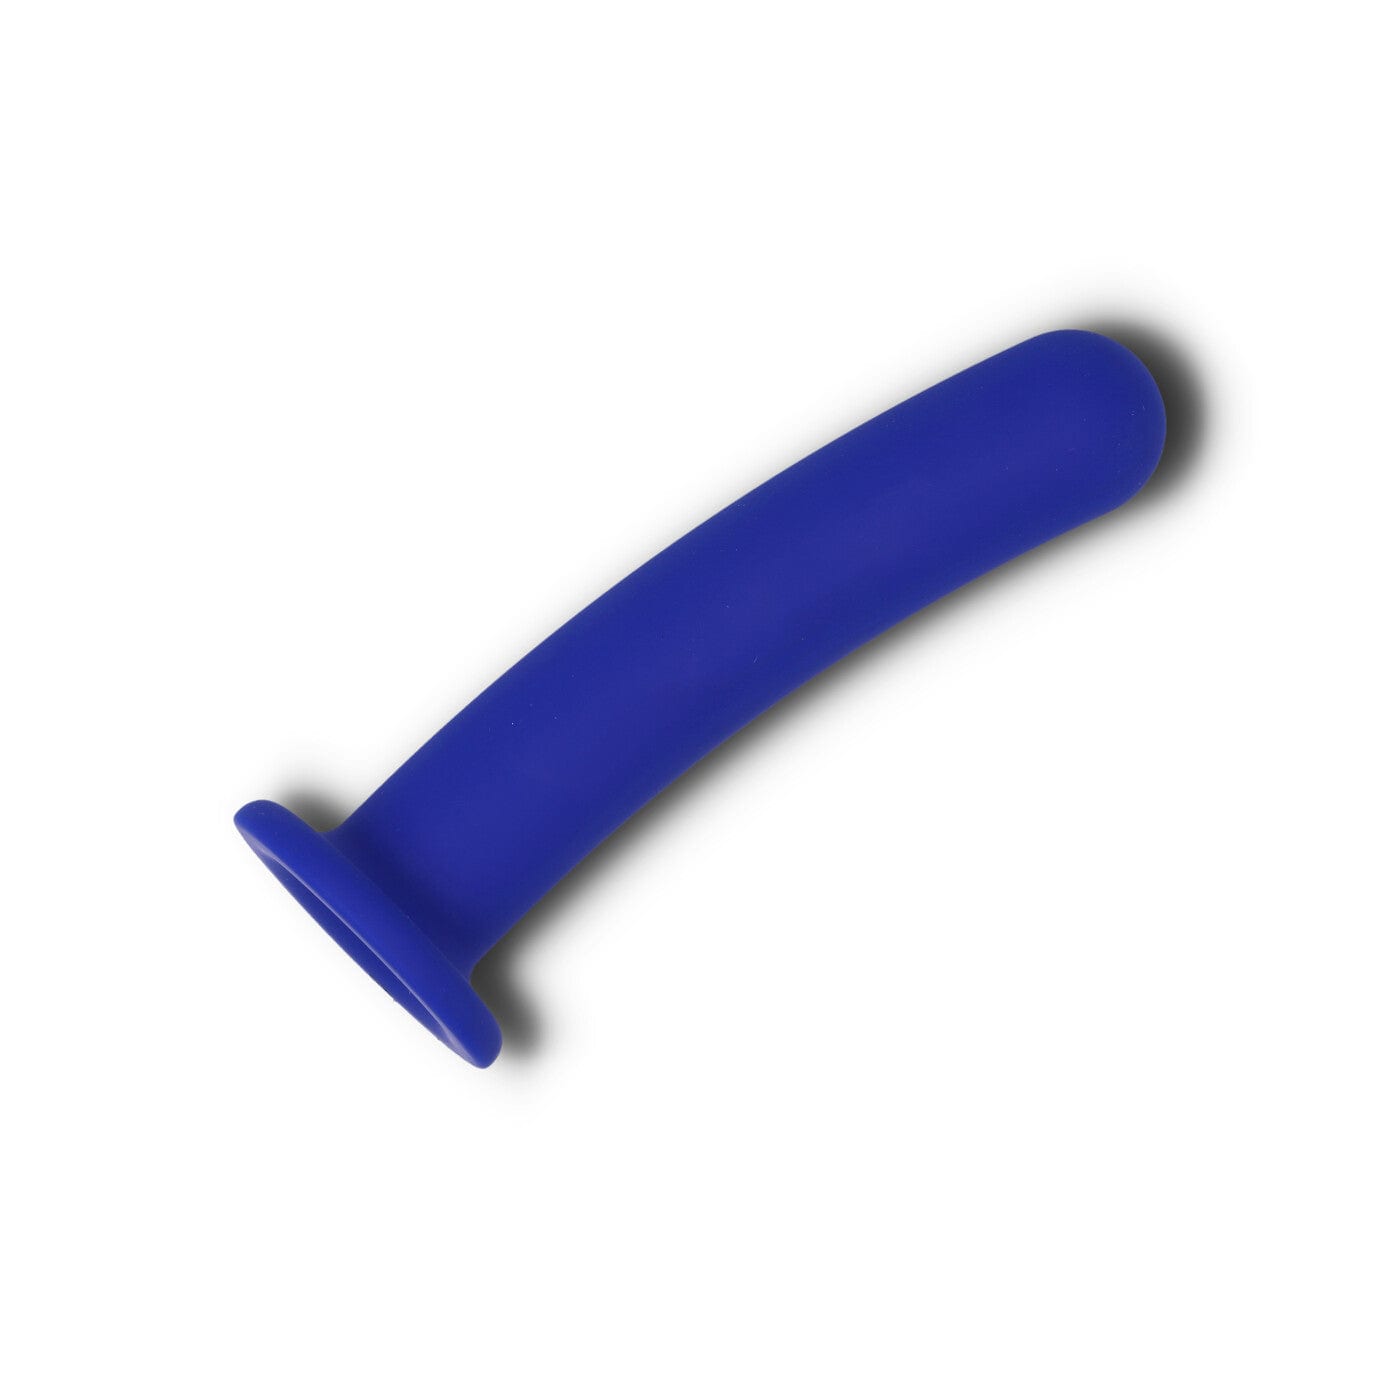 Pogo harness kompatibel dildo i blå fra unbound babes liggende